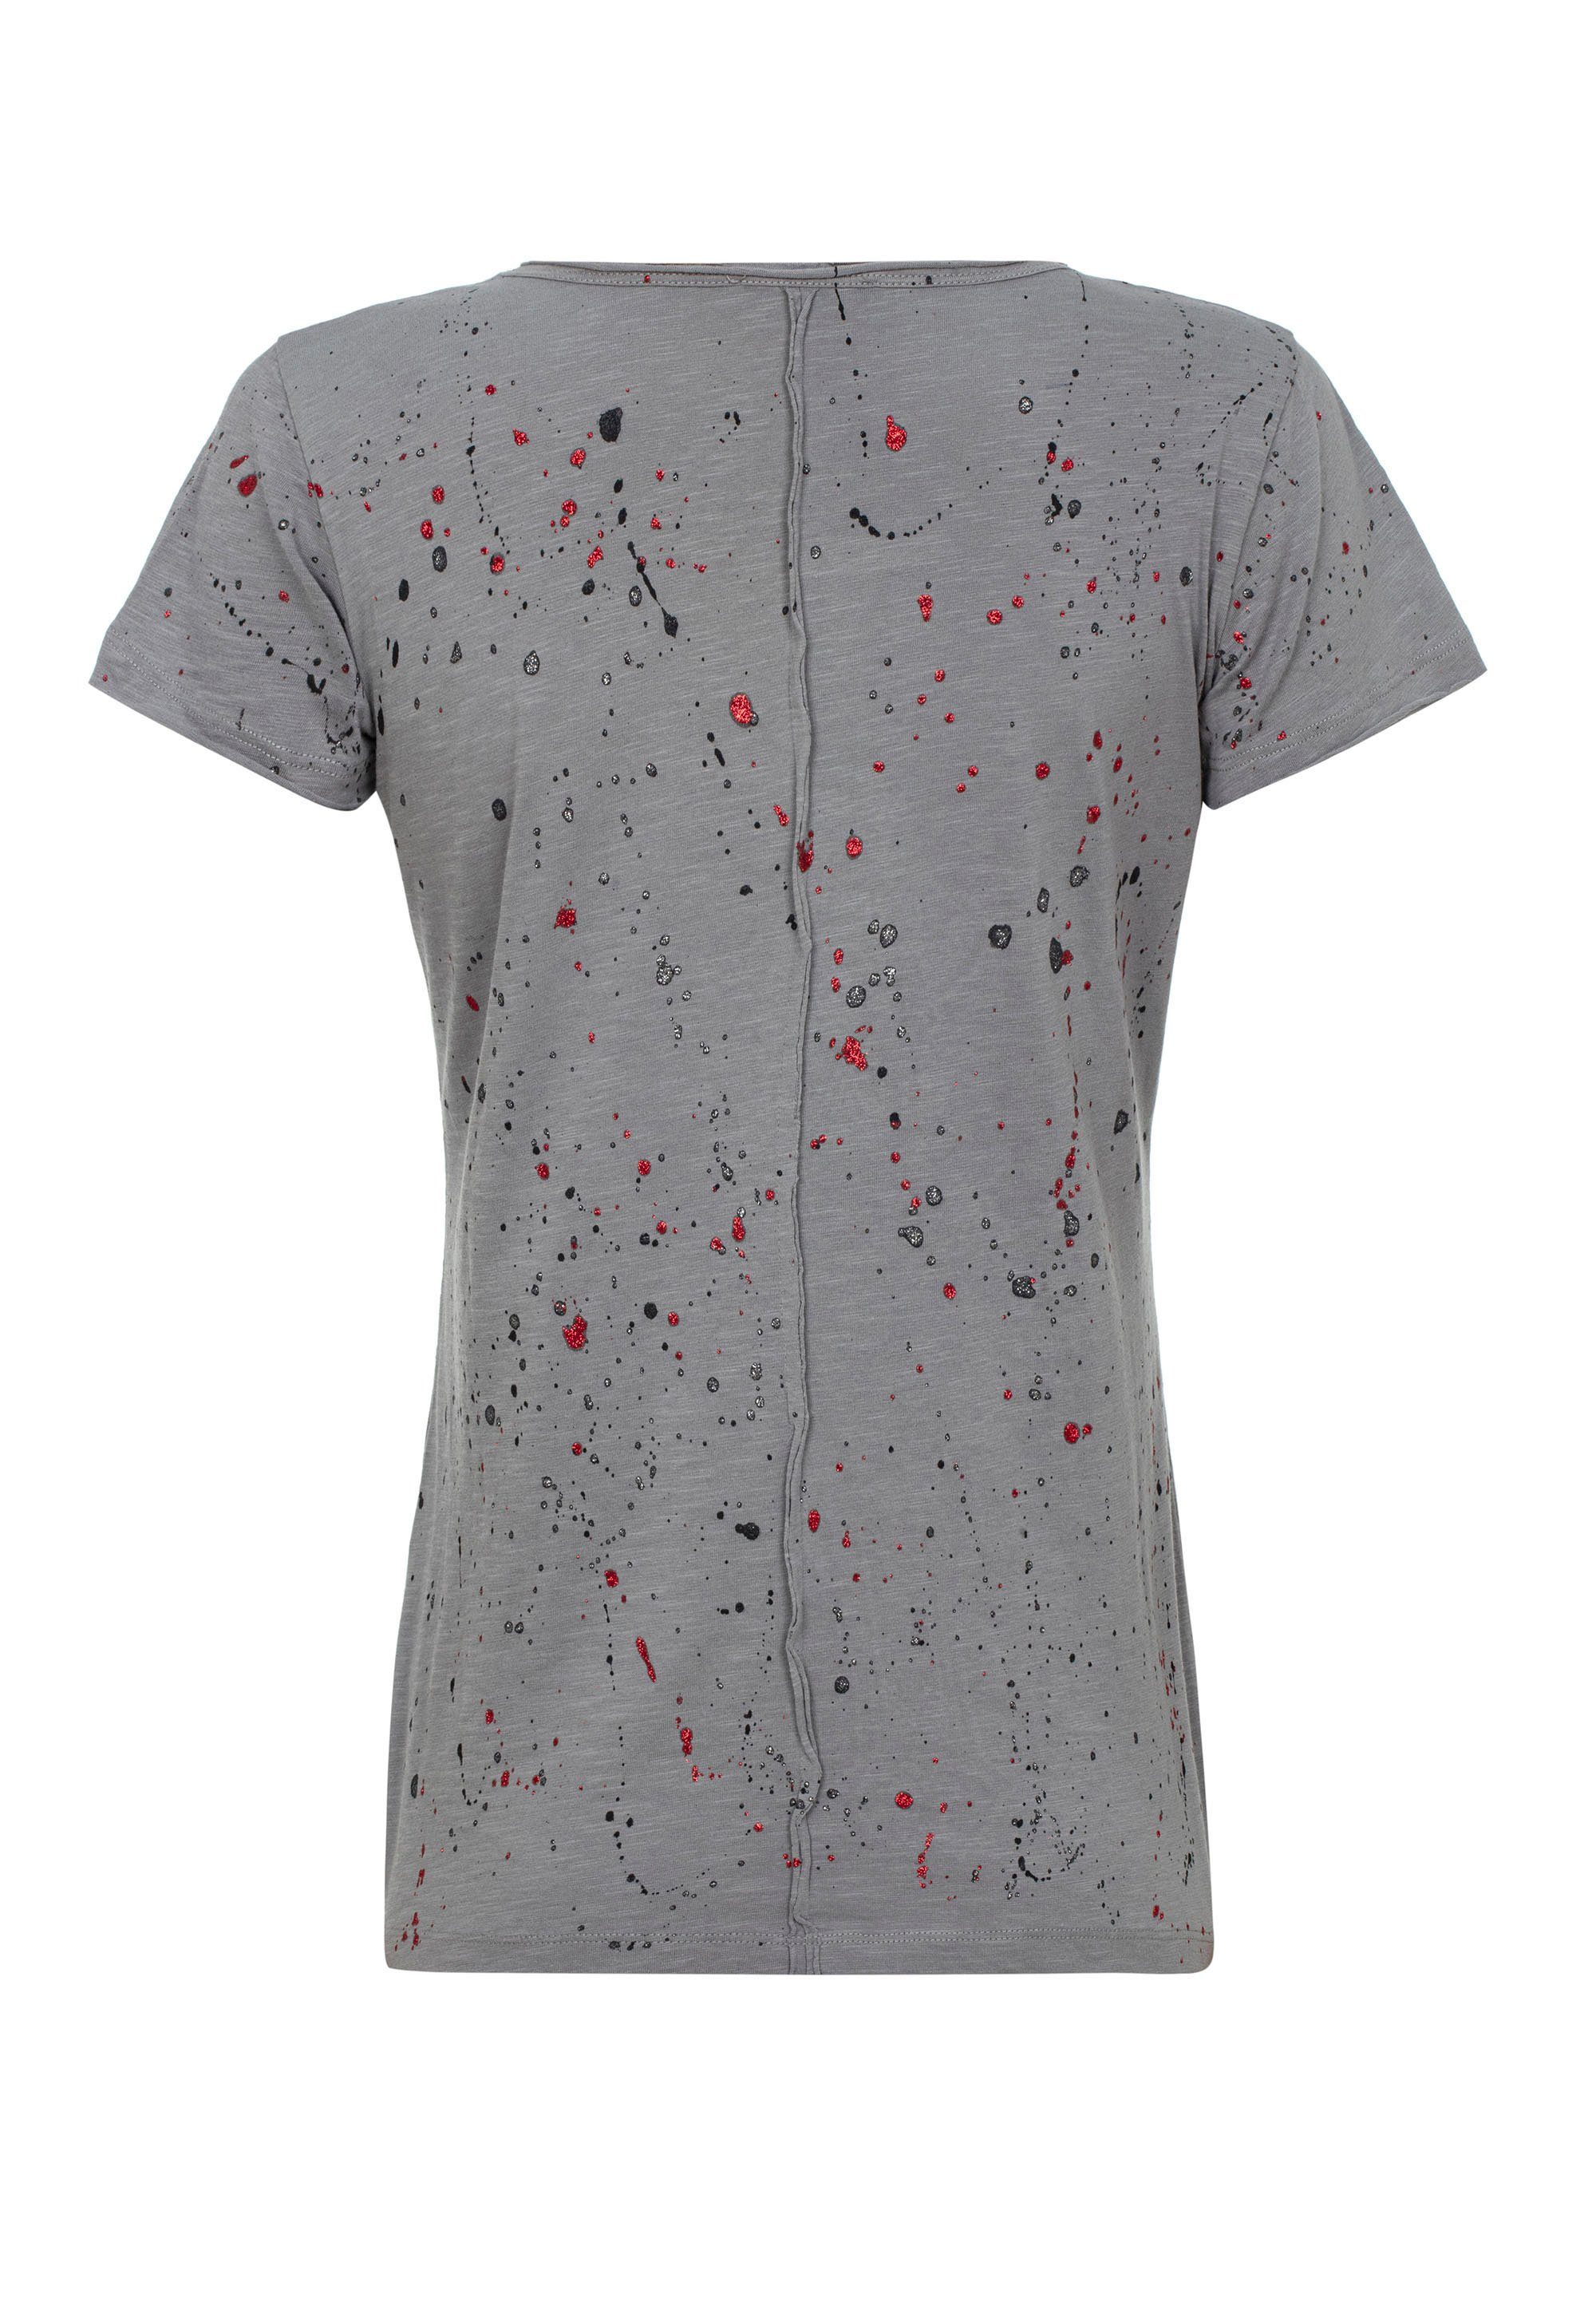 Baxx Cipo T-Shirt Glitzersteinchen mit & grau trendigen